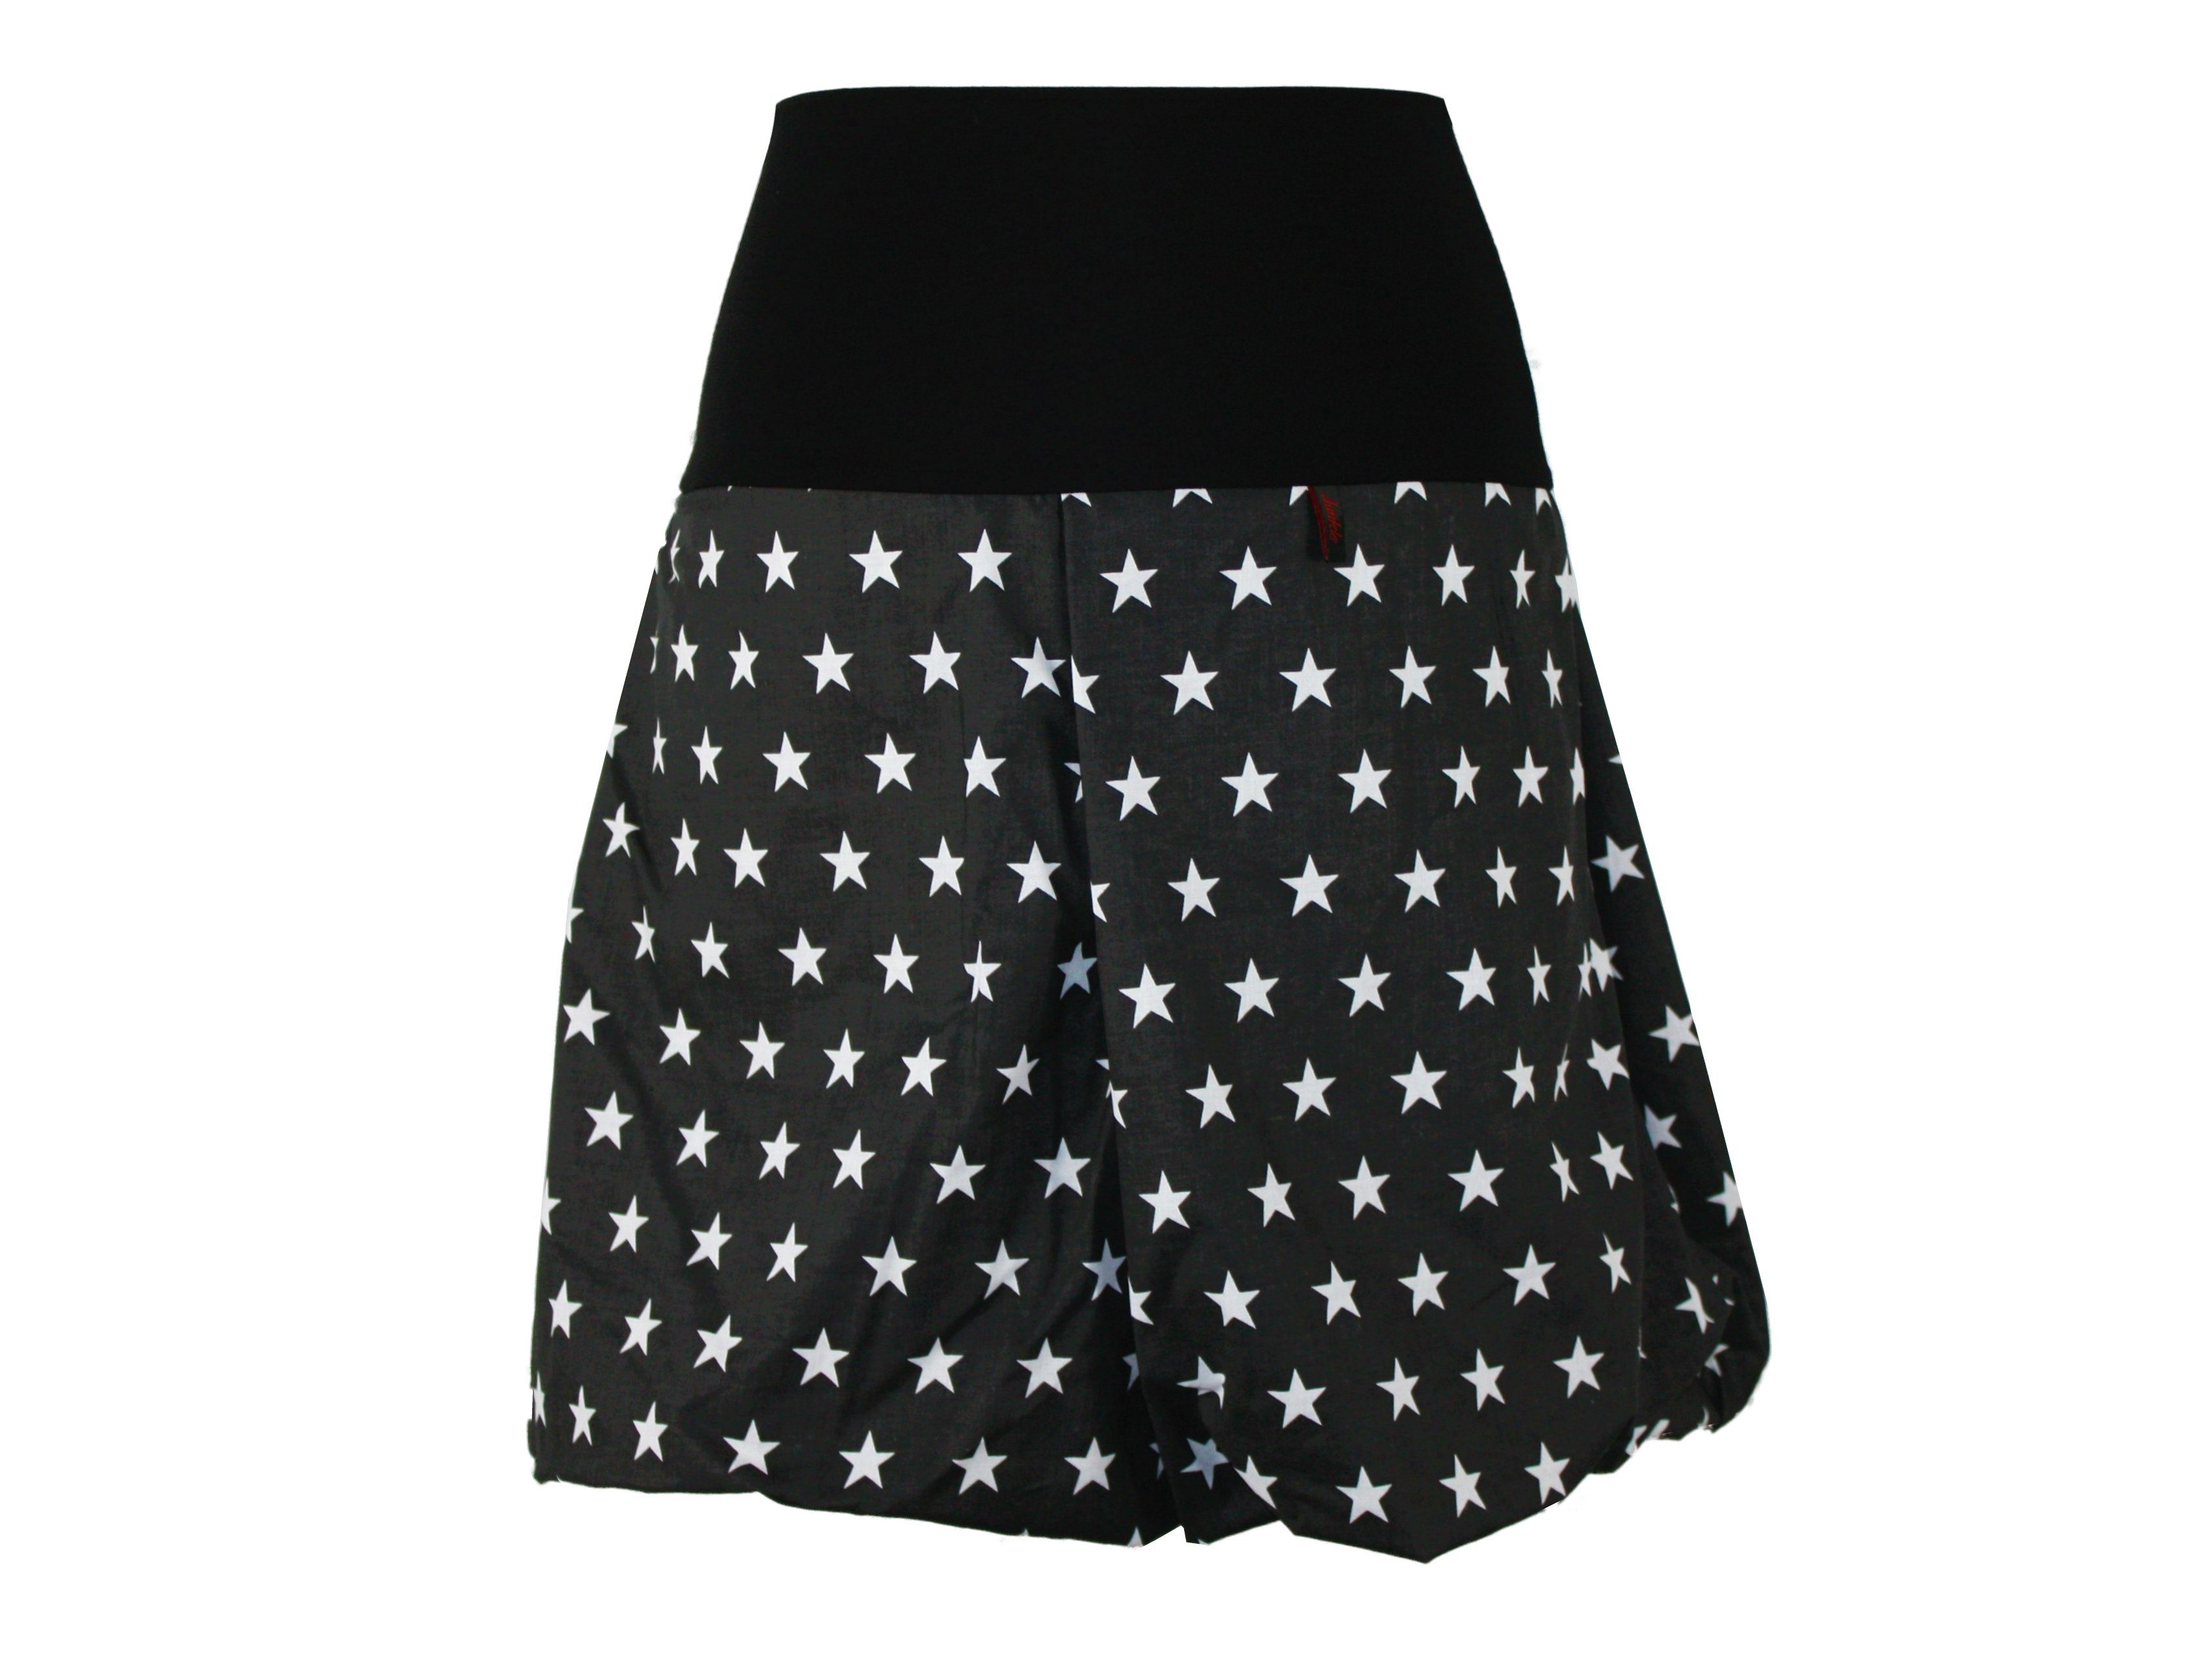 Baumwolle Ballonrock elastischer 51cm Weiß Schwarz dunkle Bund design Sterne